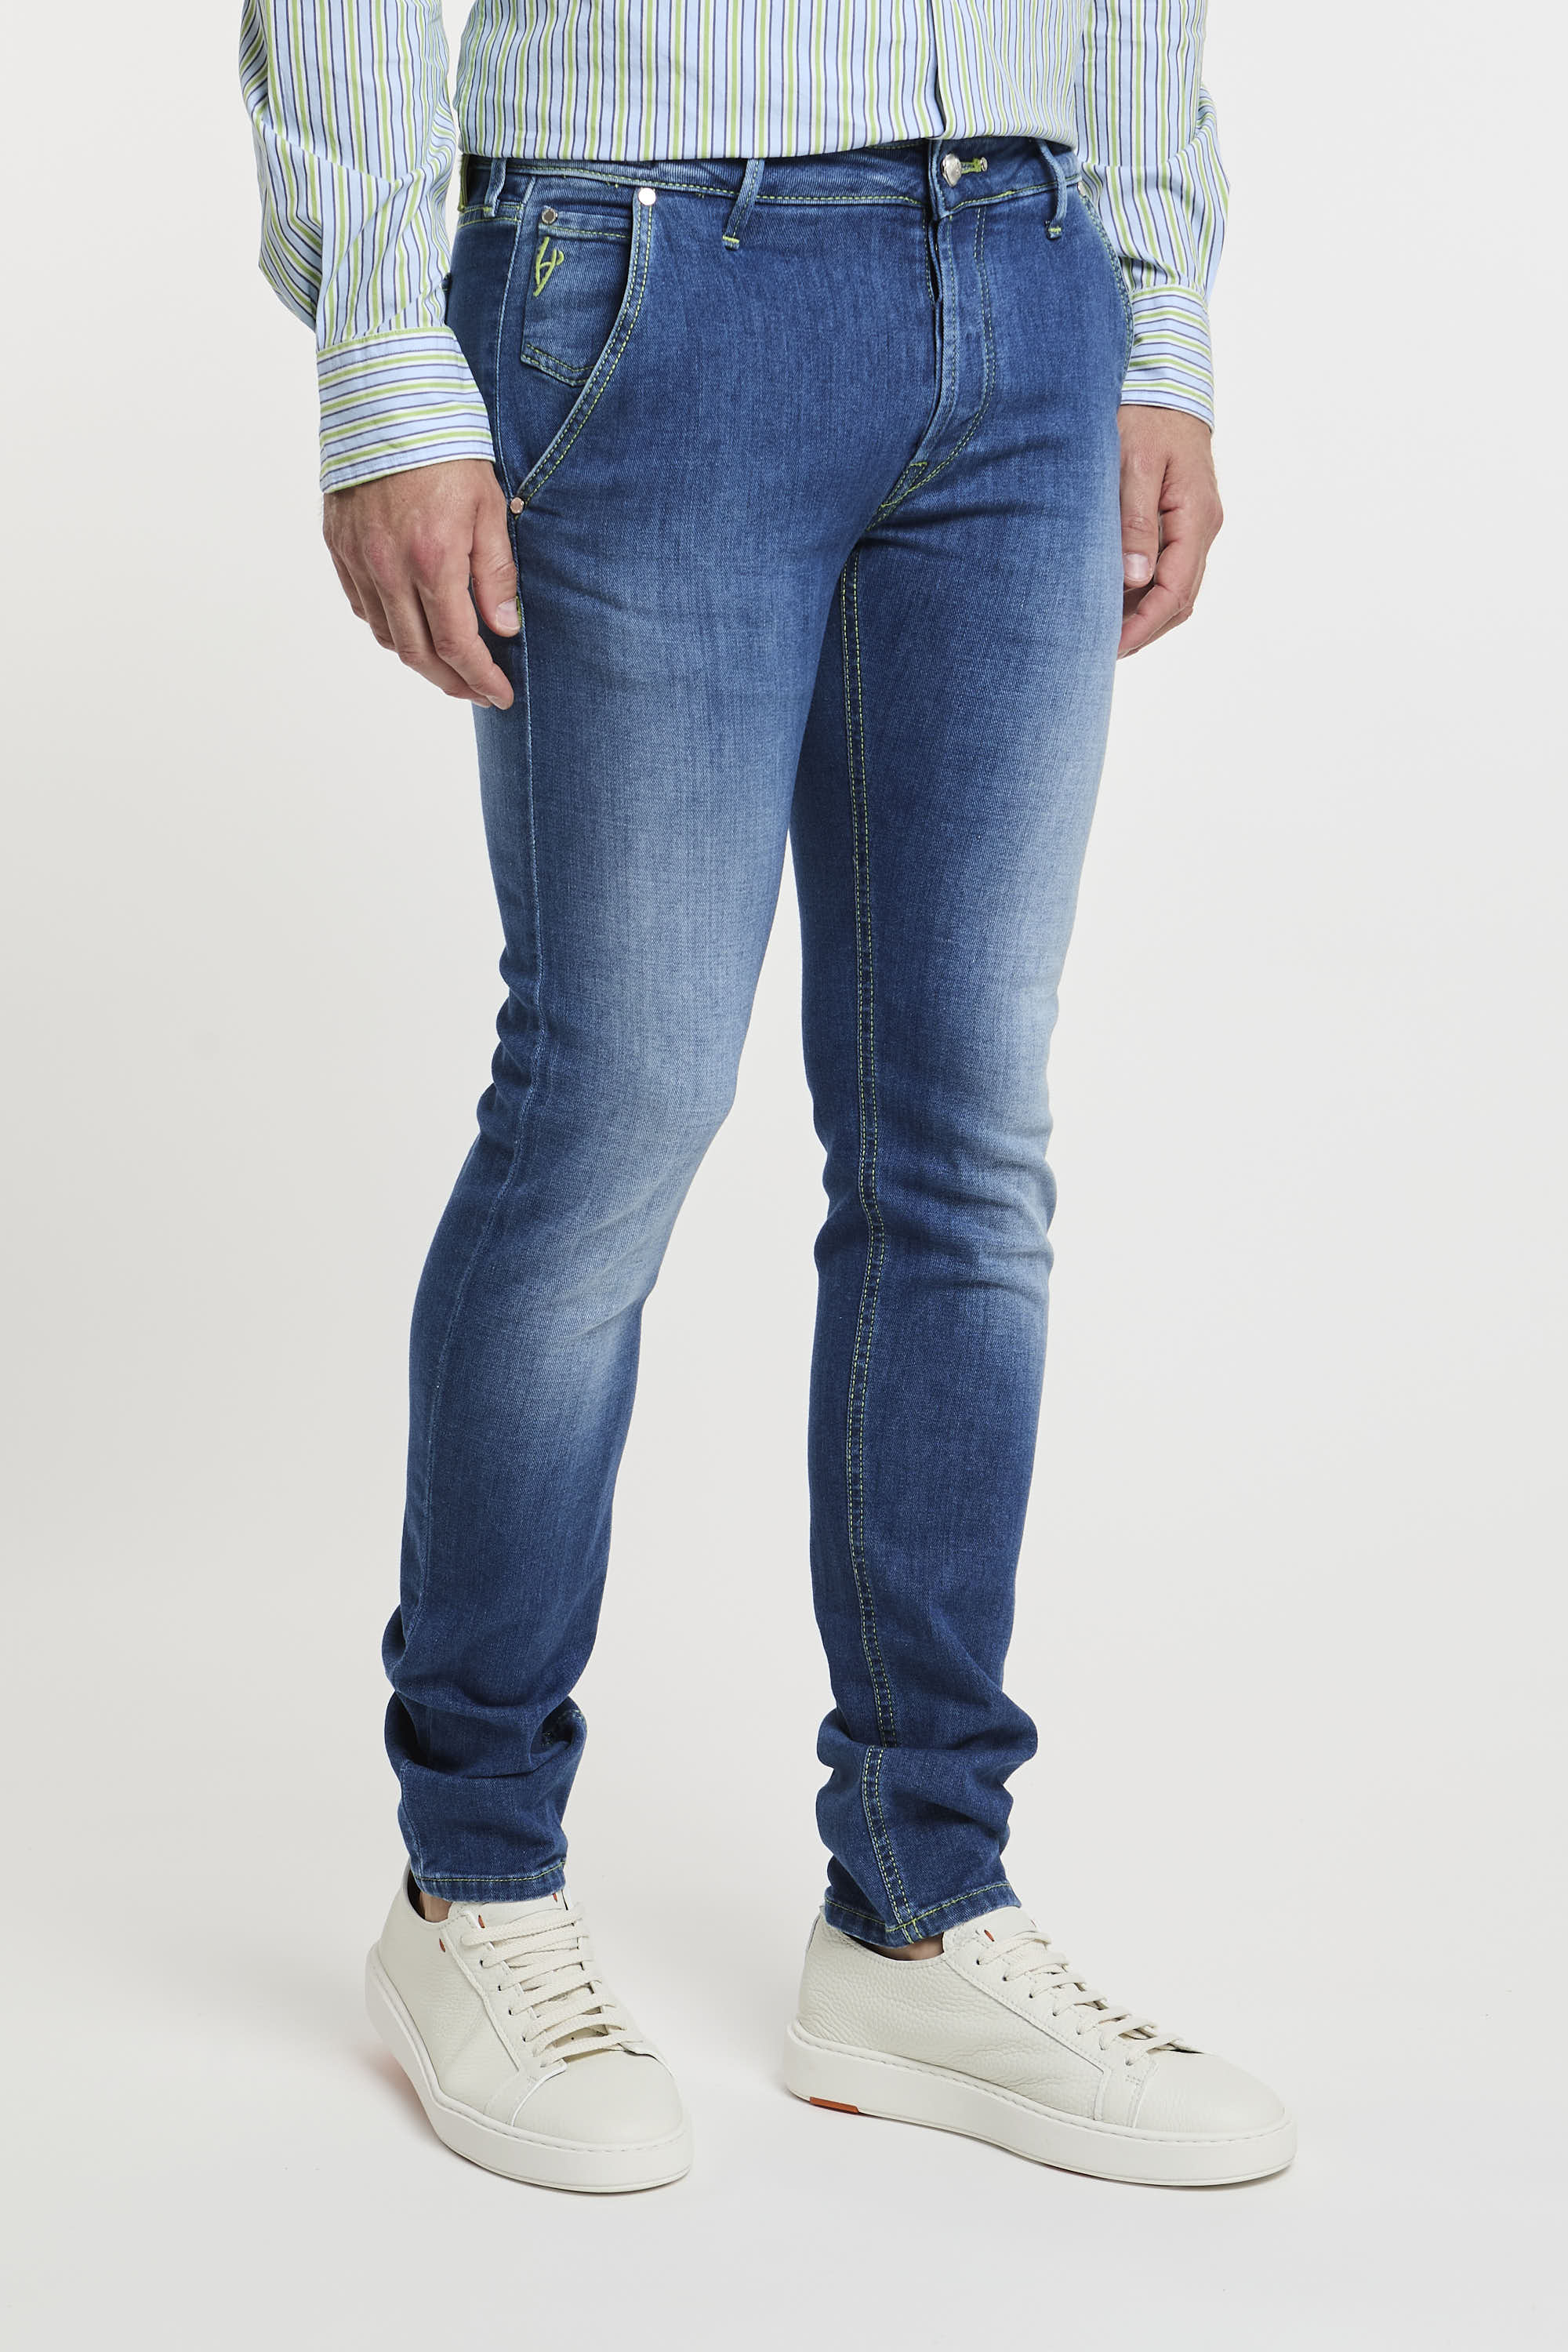 Handpicked Jeans Parma aus Denim-Baumwolle-3